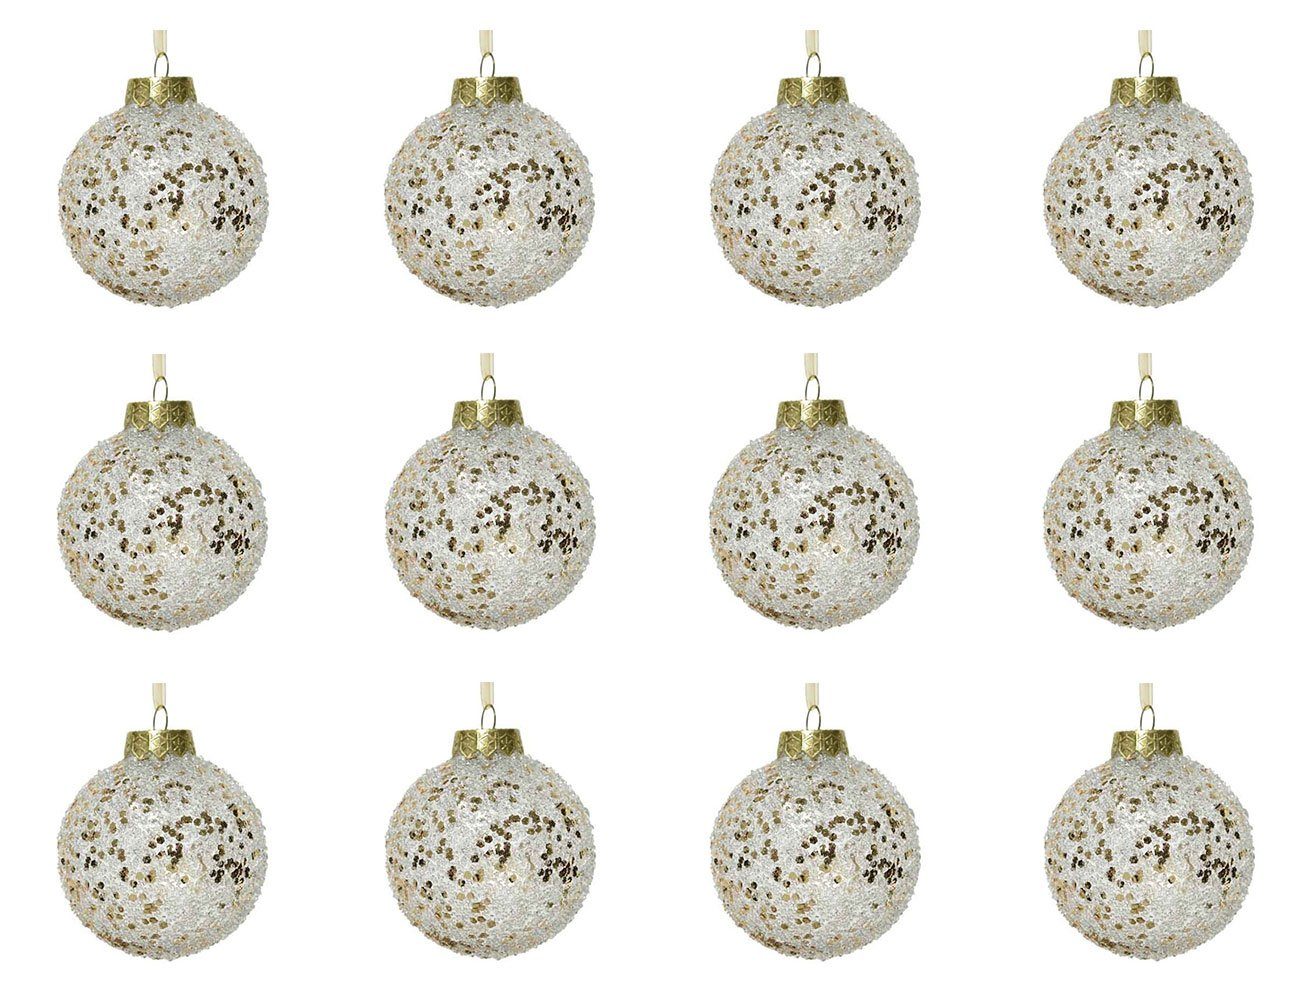 Decoris season decorations Christbaumschmuck, Weihnachtskugeln Kunststoff mit Glitzer 8cm transparent gold, 12er Set